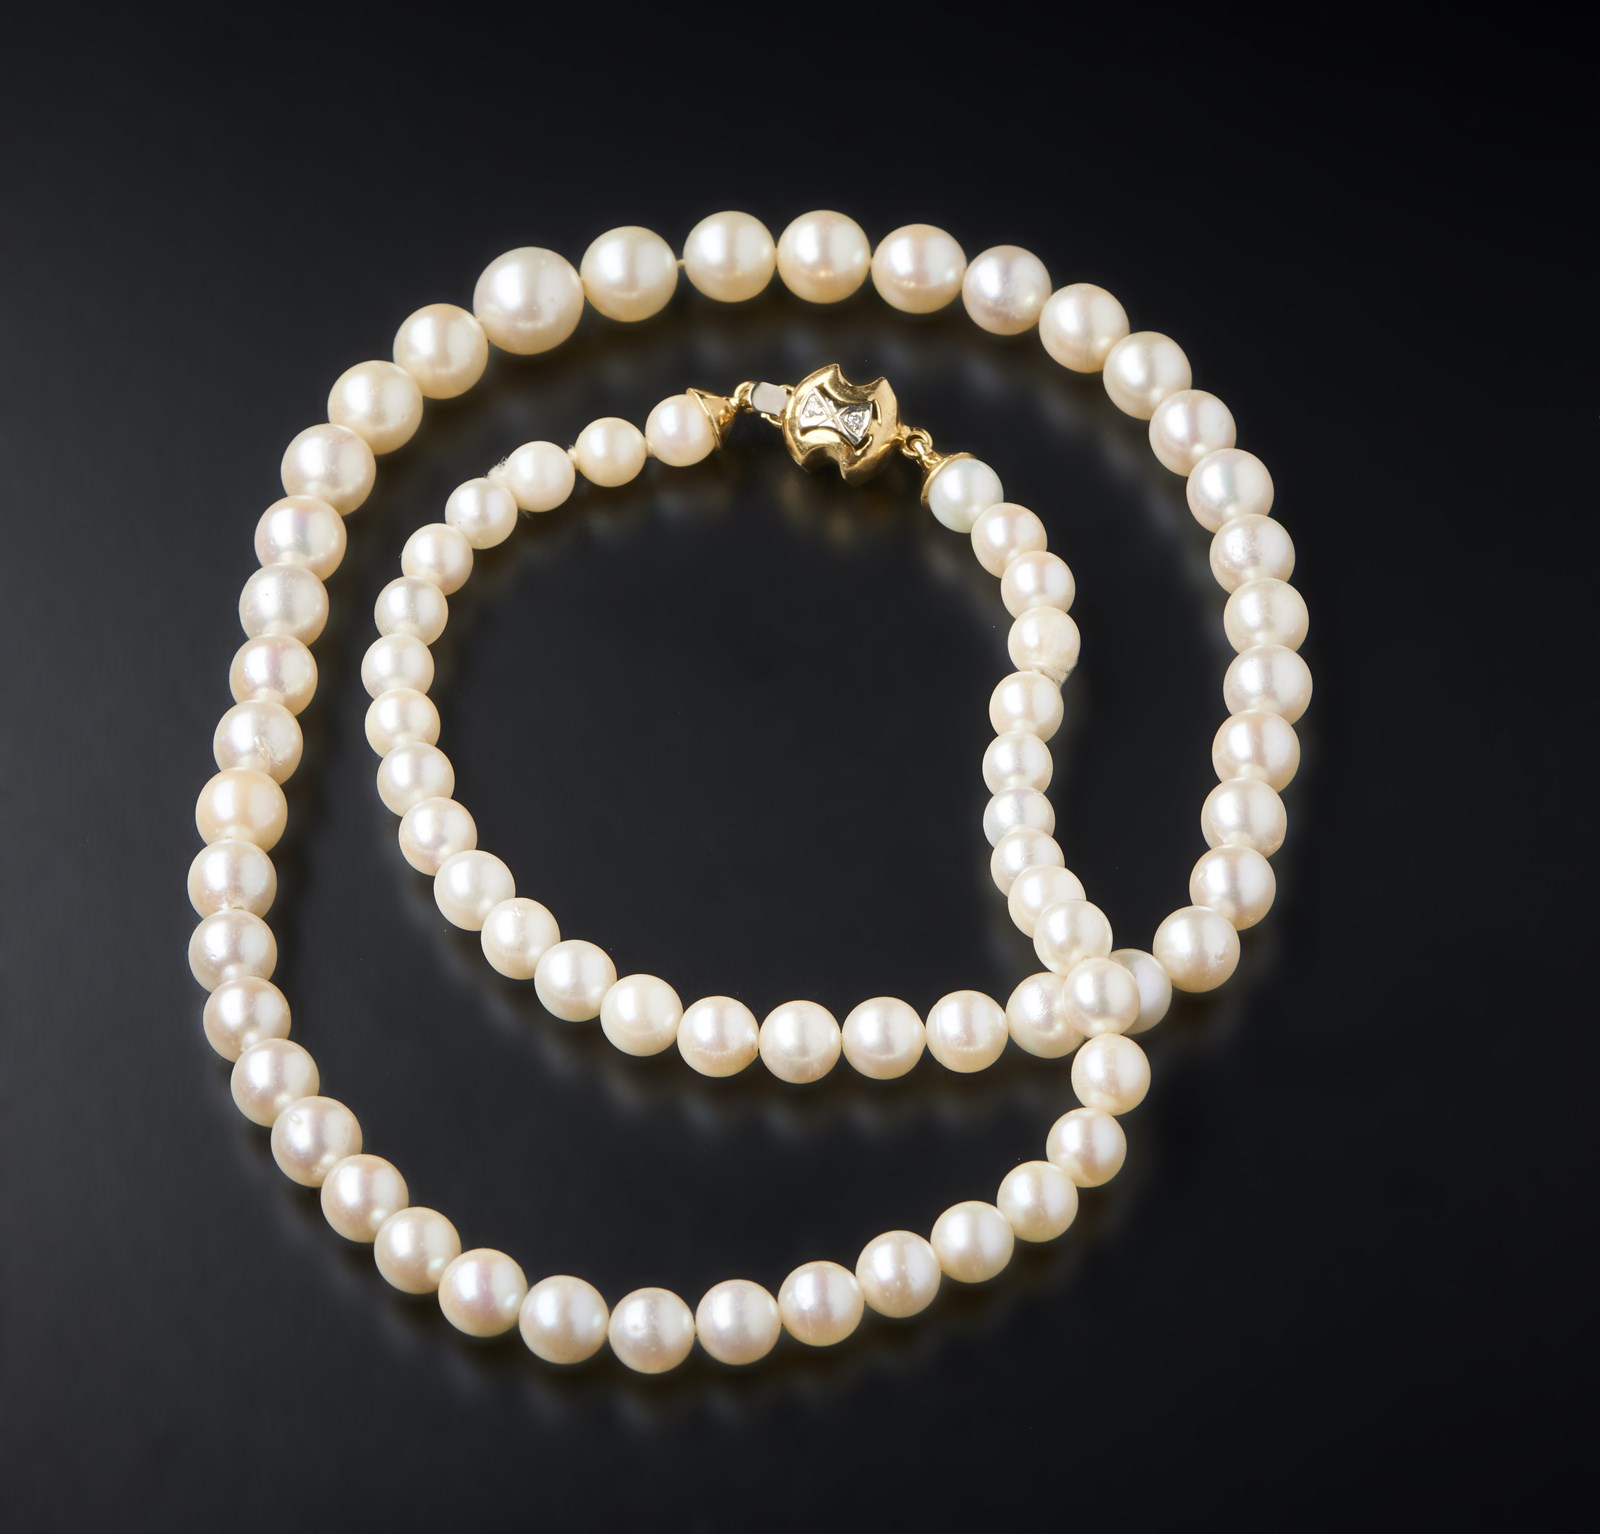 Filo di perle coltivate bianche sferiche di mm 7 con chiusura in oro giallo 750/1000 e piccoli diamanti. (. )